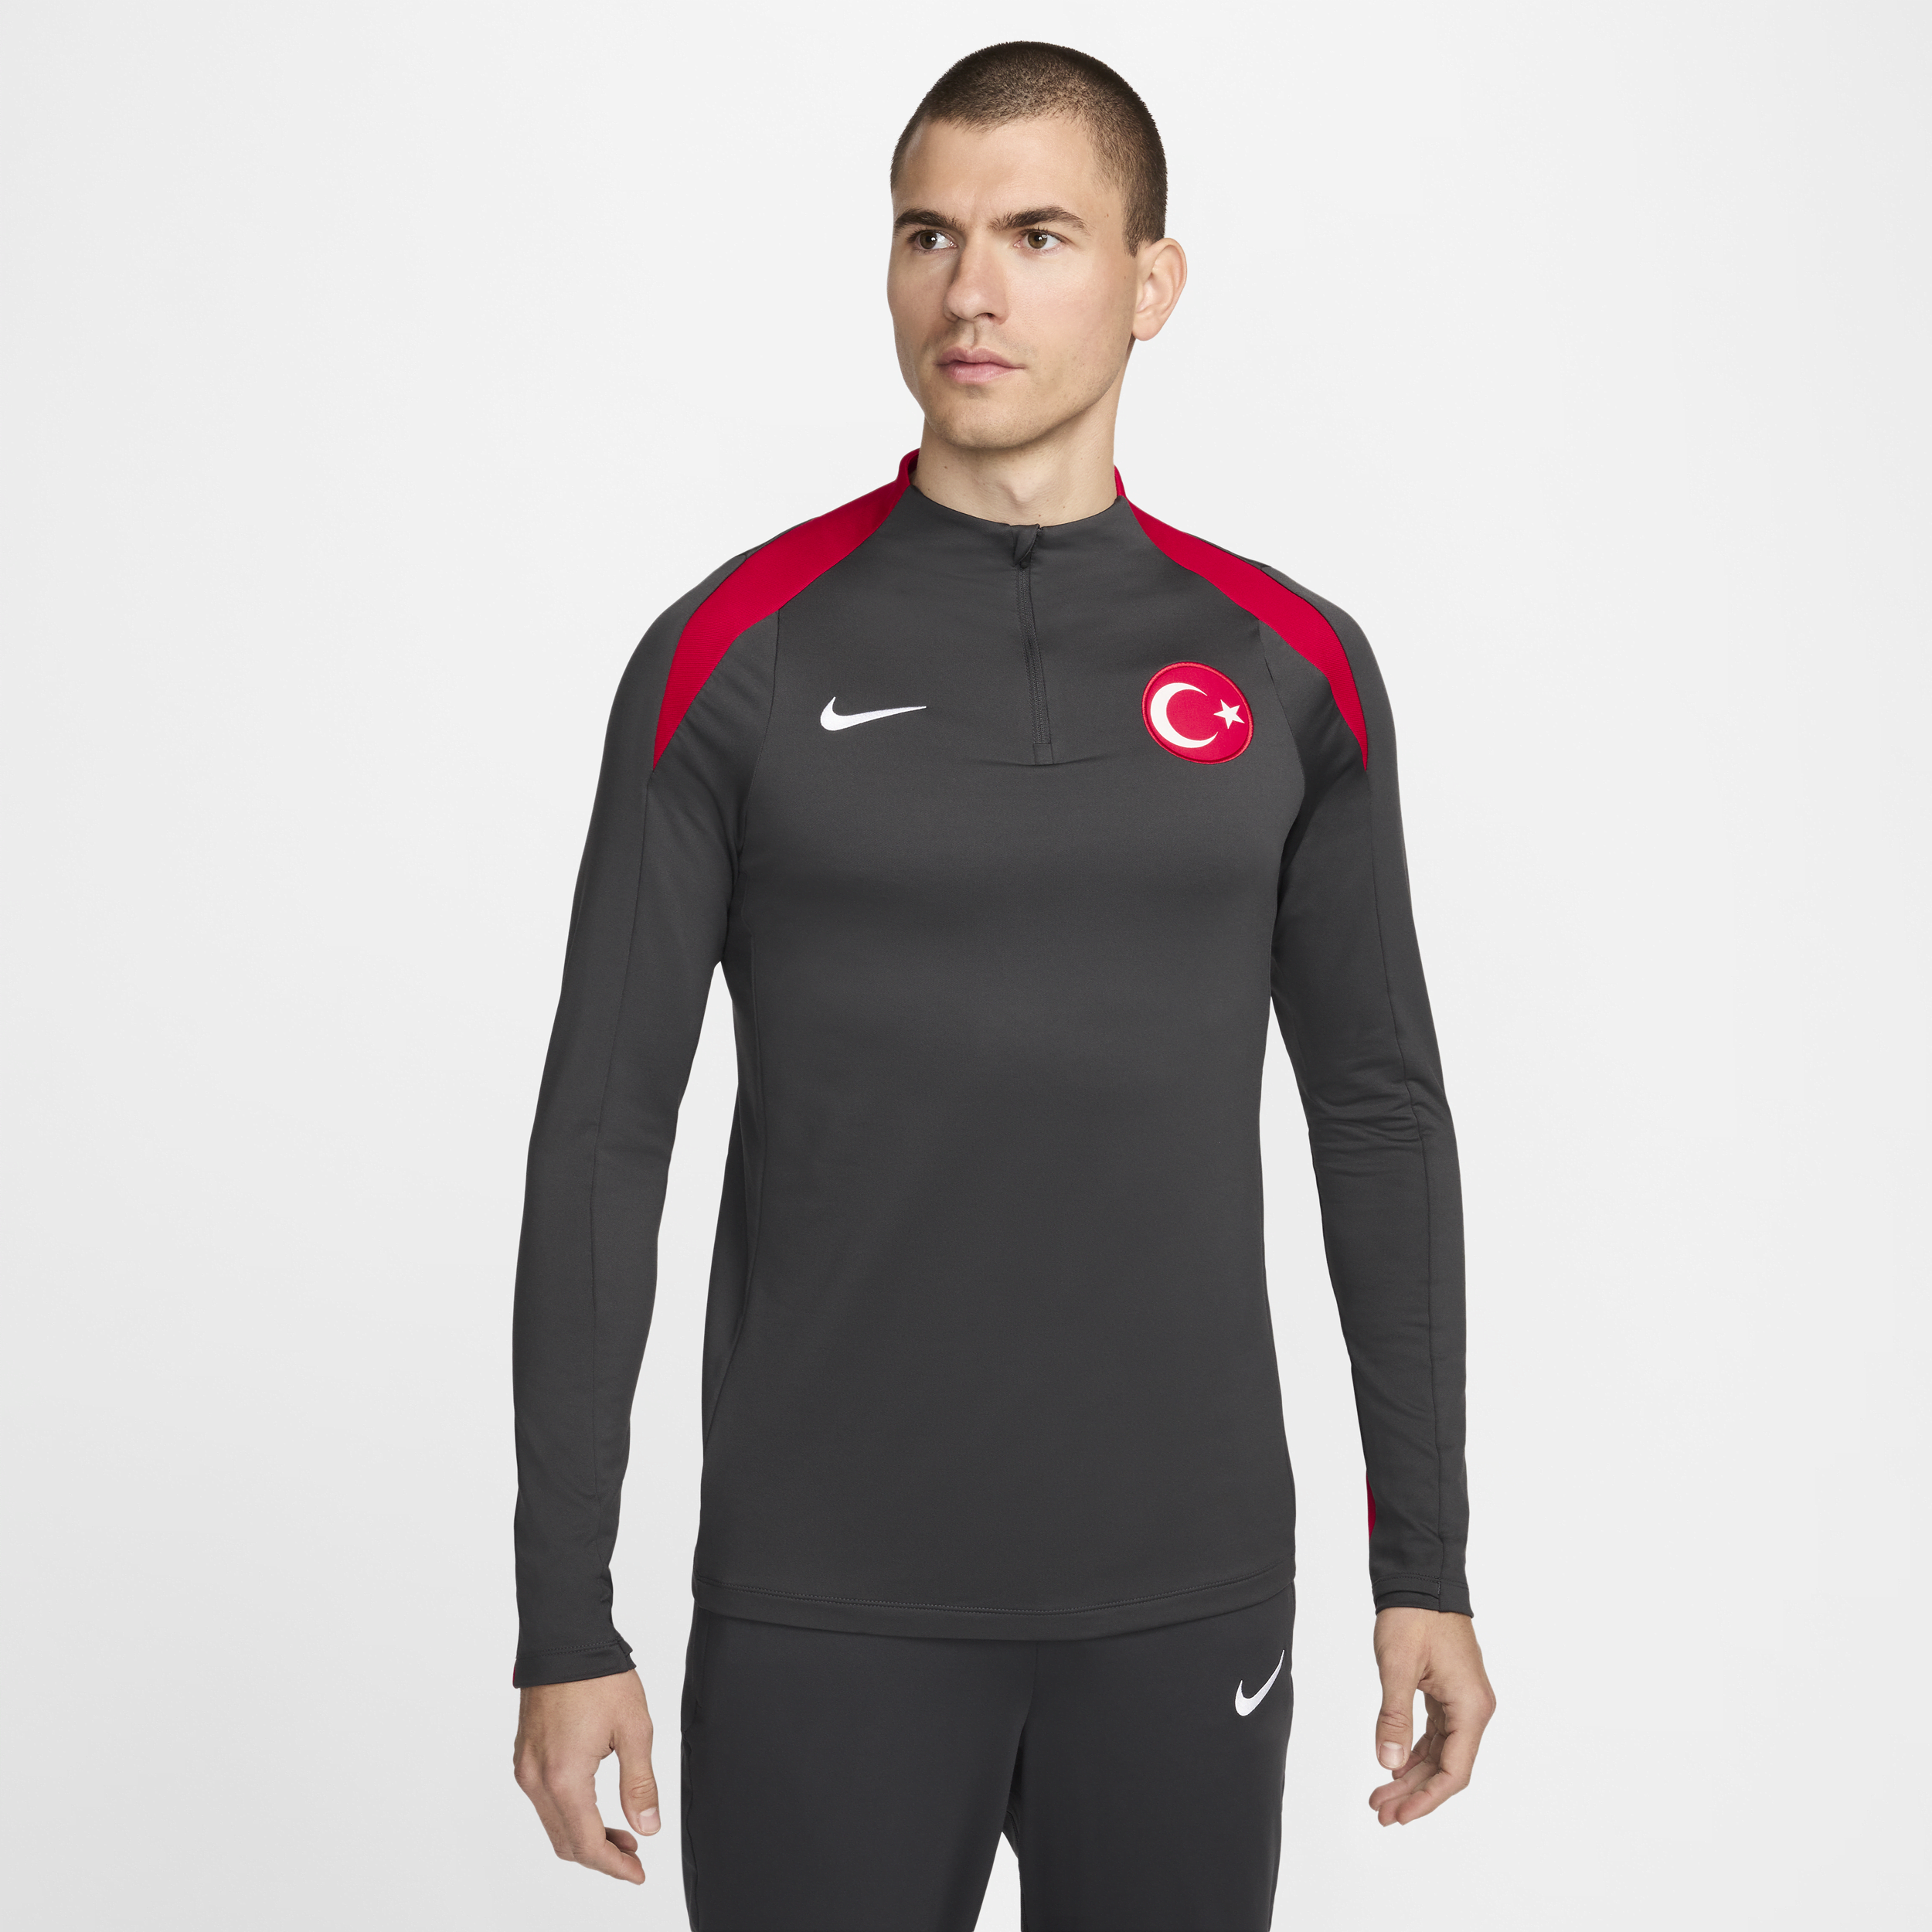 Türkiye Strike Nike Dri-FIT-fodboldtræningstrøje til mænd - grå